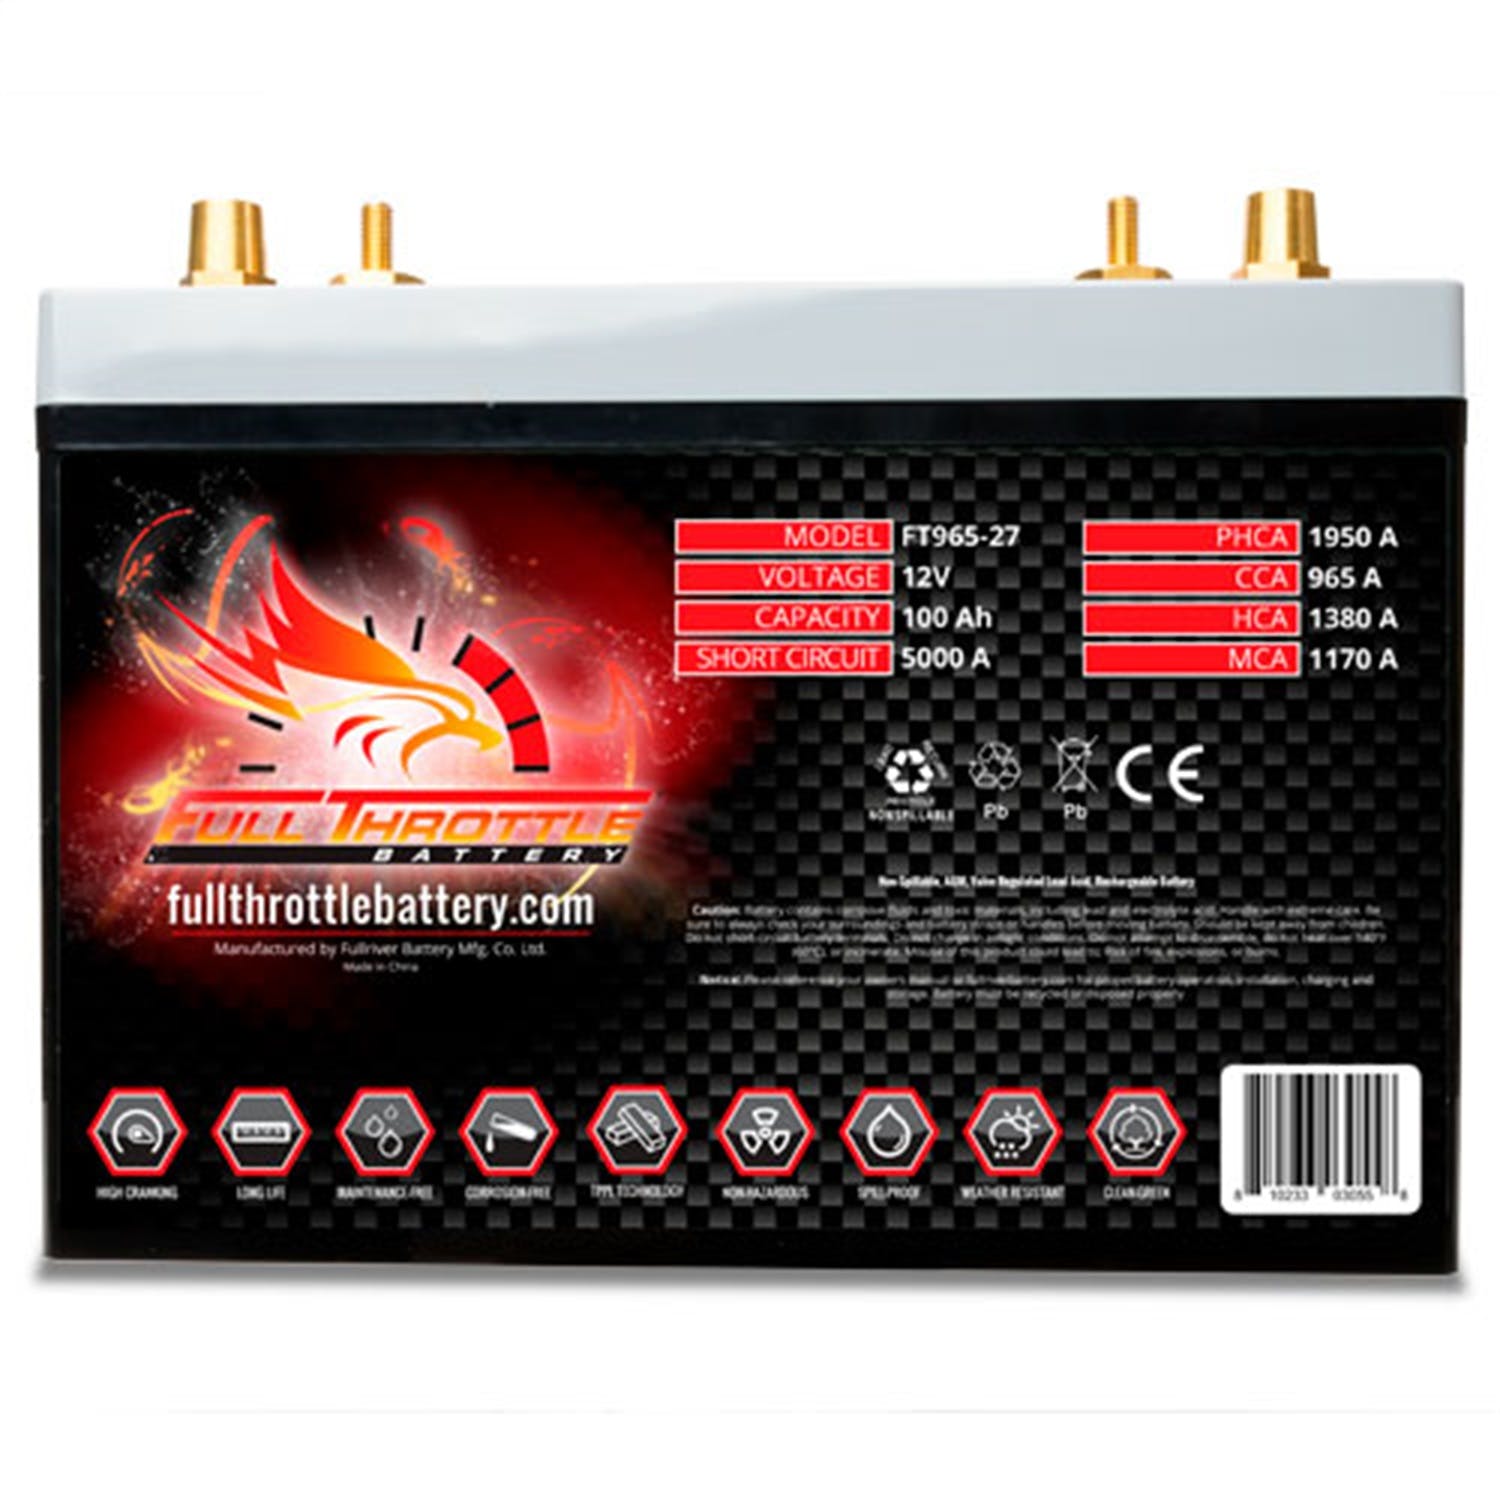 Fullriver Battery FT965-27 Full Throttle 12V Automotive Battery